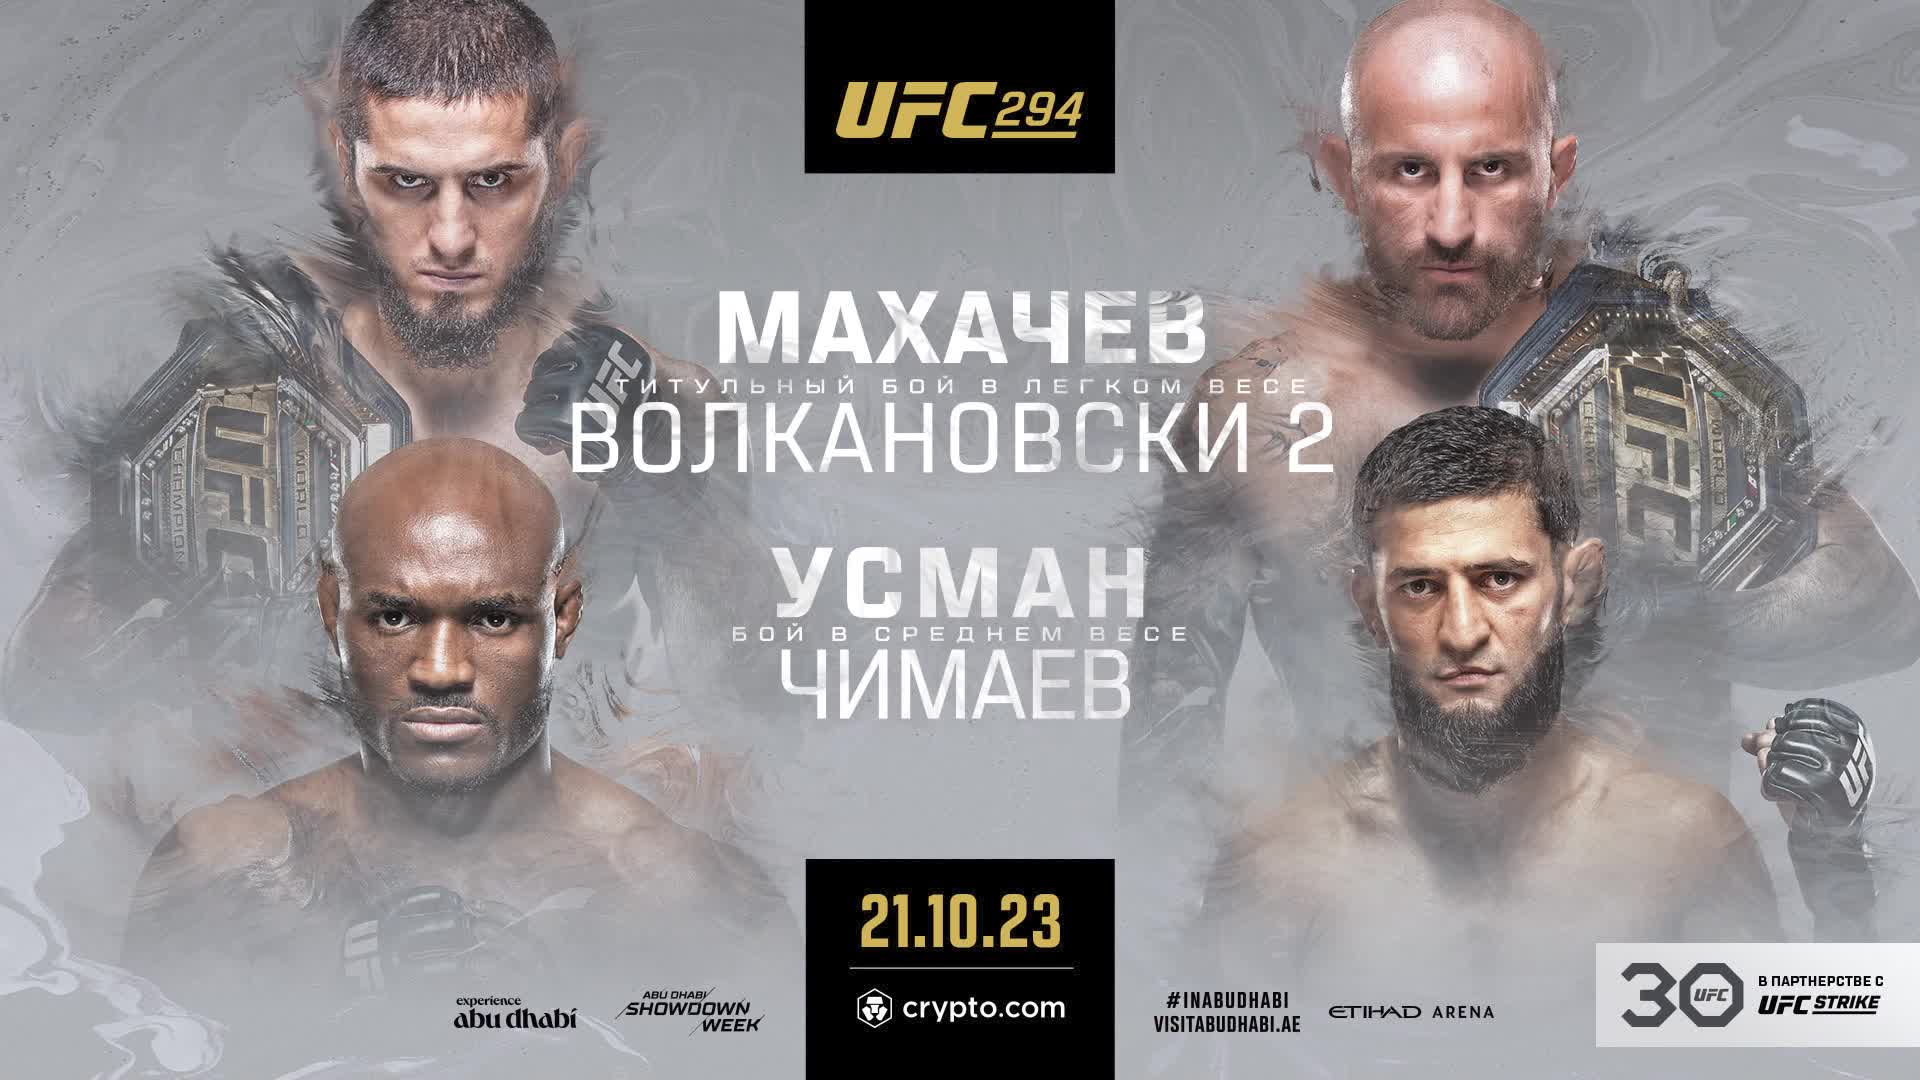 Главный турнир года для российских фанатов MMA: вся информация об огненном UFC 294 в Абу-Даби